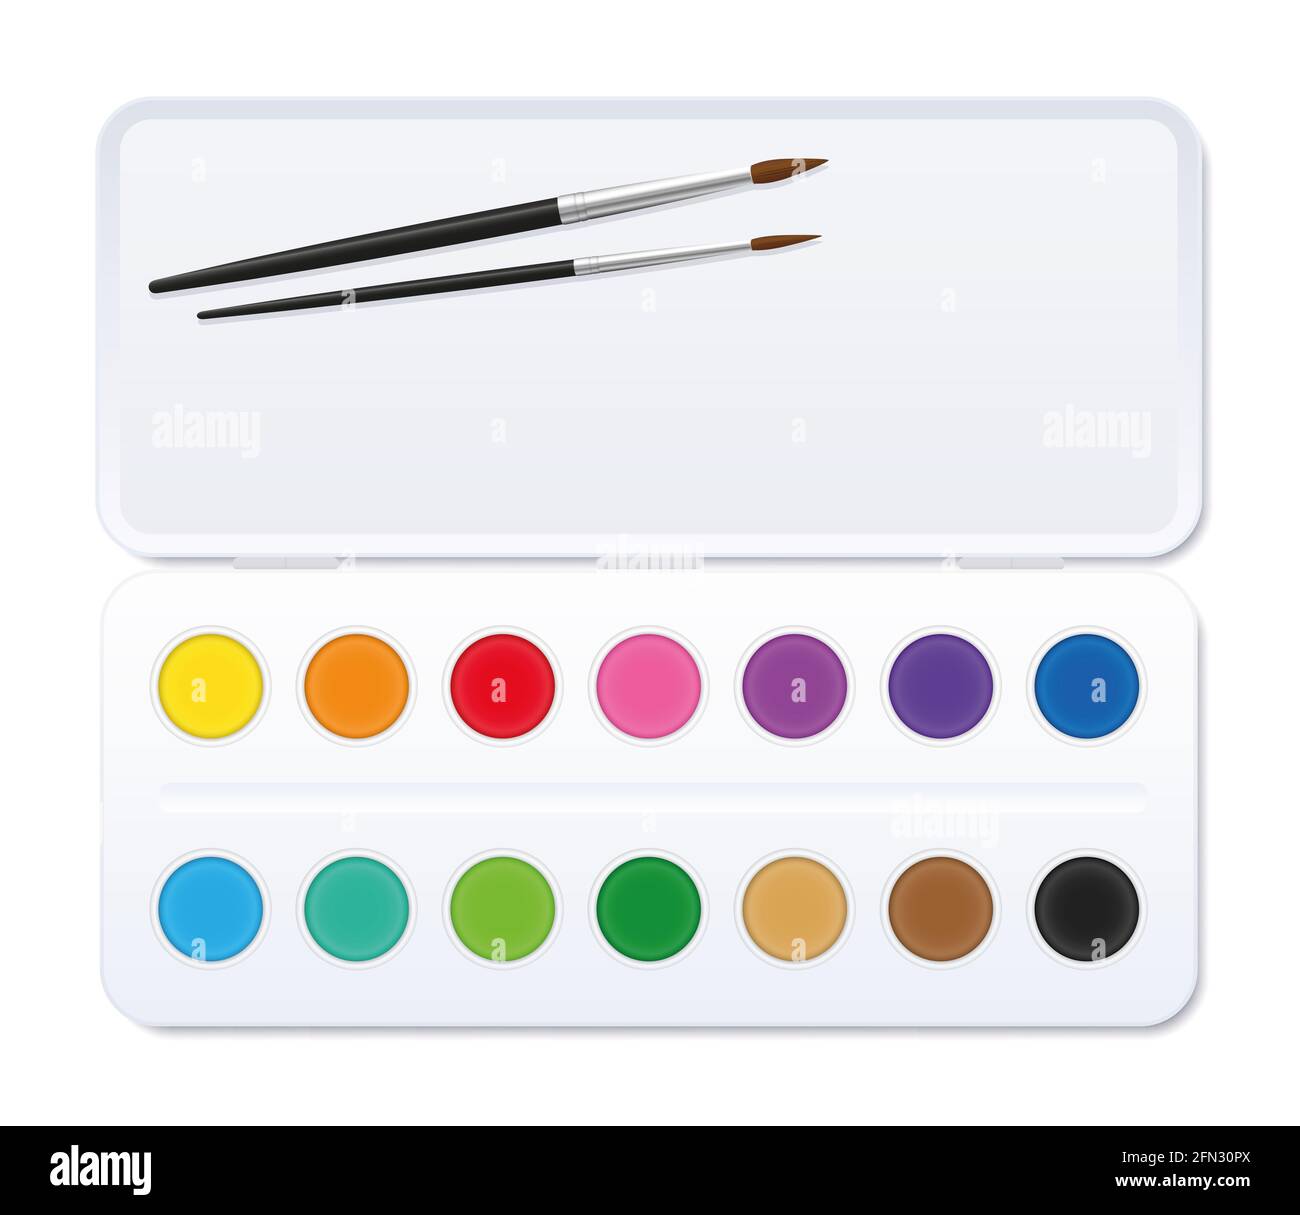 Aquarell-Farbkasten mit Pinsel und offenem Deckel und vierzehn runden Farbtöpfen - Illustration auf weißem Hintergrund. Stockfoto